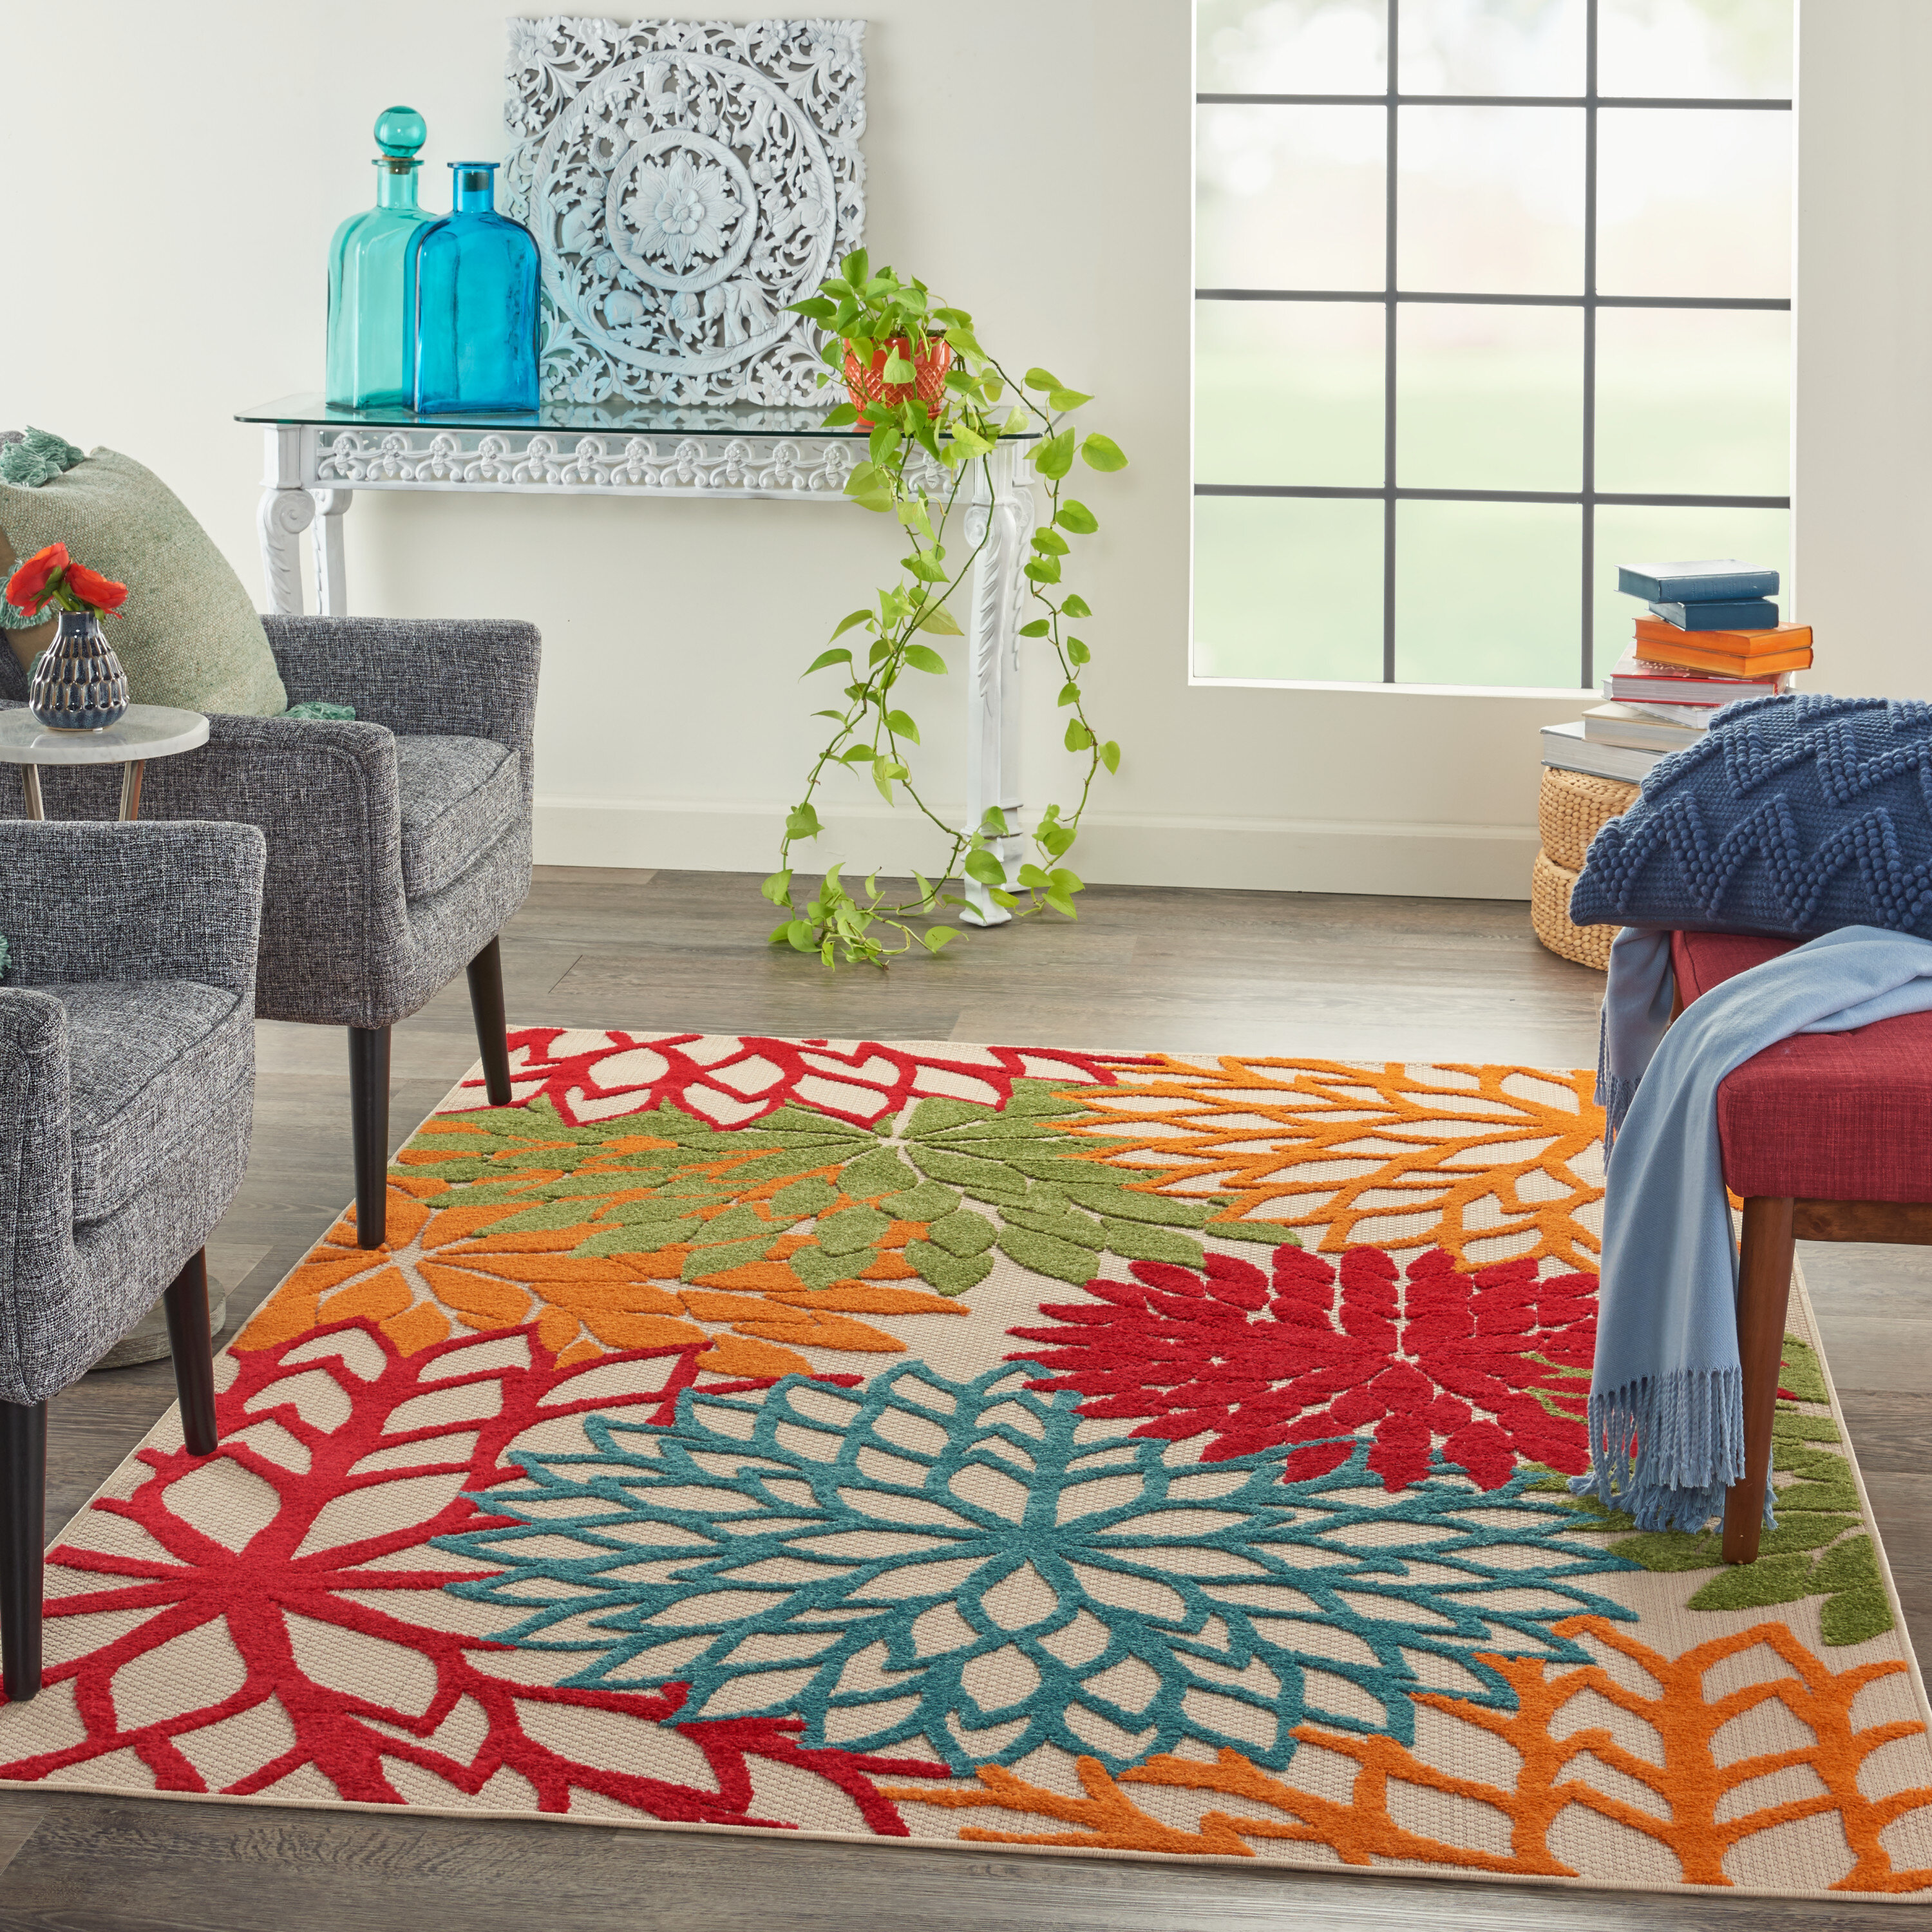 Traditional Round Non-Slip Rug Mat Carpet Runner Soft Carpets For Living Room 